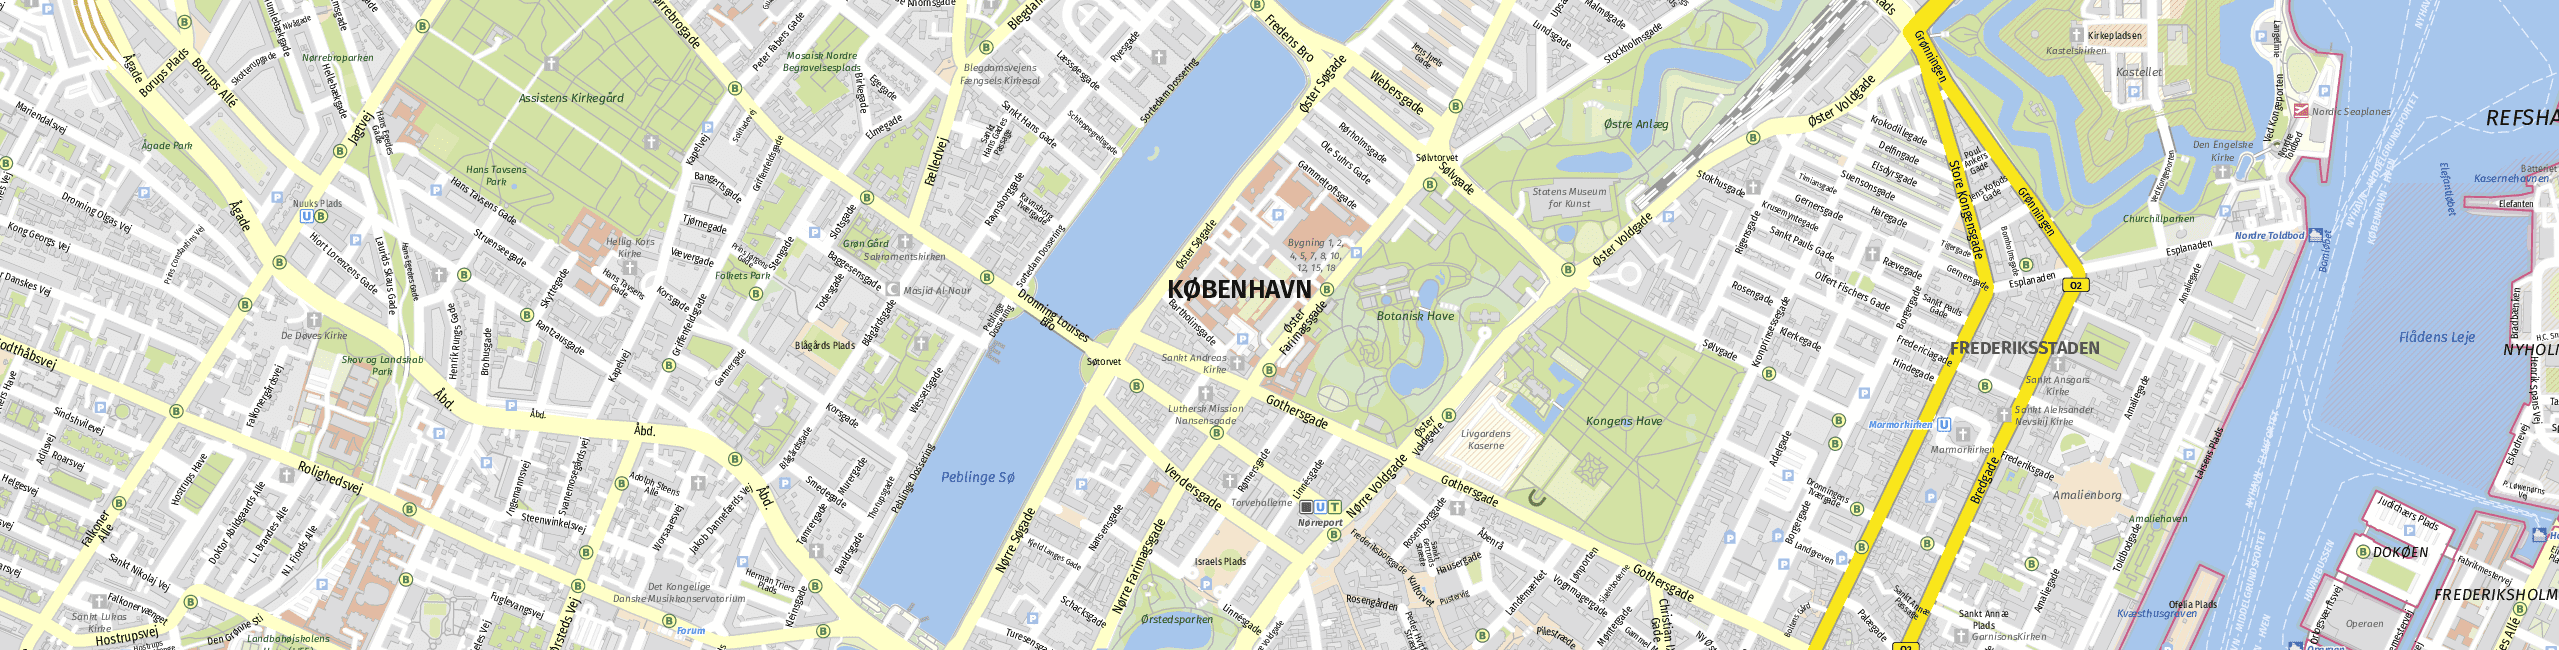 Stadtplan Copenhagen zum Downloaden.